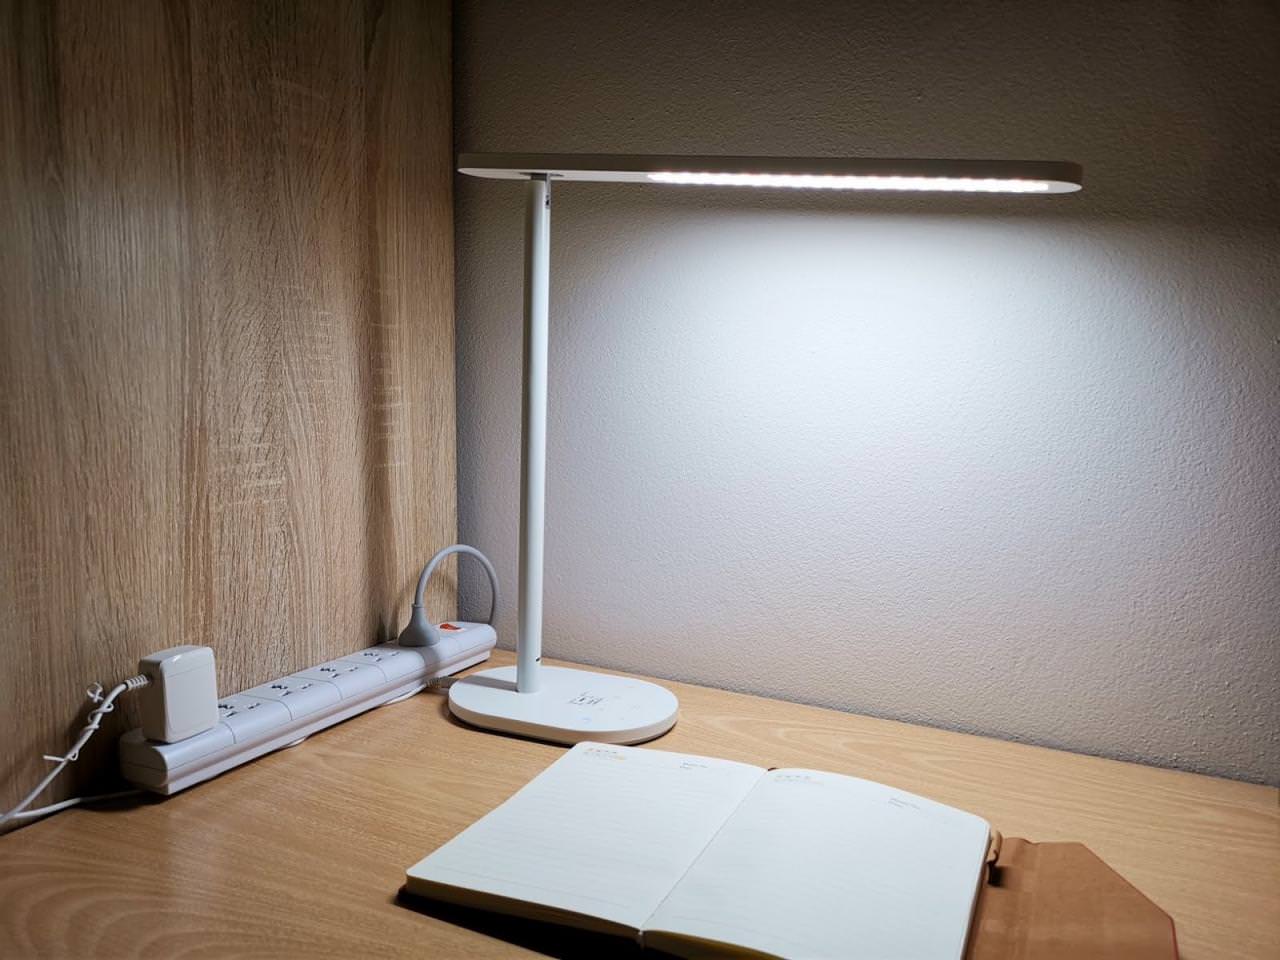 รีวิว OPPLE IF Table Lamp โคมไฟที่ครบถ้วนทั้งดีไซน์และคุณสมบัติ